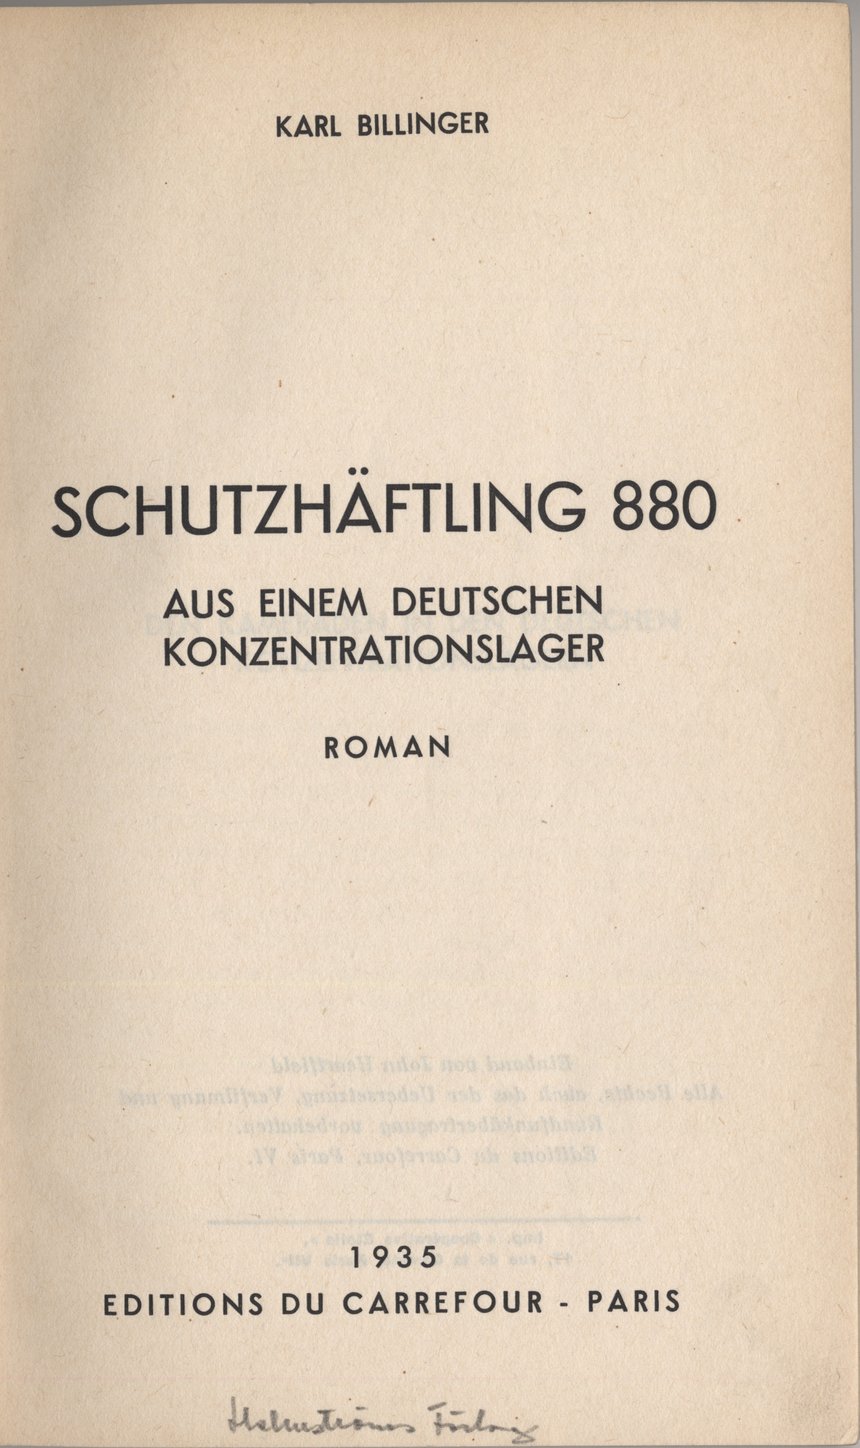 Titelbild des 1935 unter dem Pseudonym Karl Billinger veröffentlichten autobiografischen Romans "Schutzhäftling 880". Einband gestaltet von John Heartfield (Das Bild zeigt nicht Paul W. Massing.).